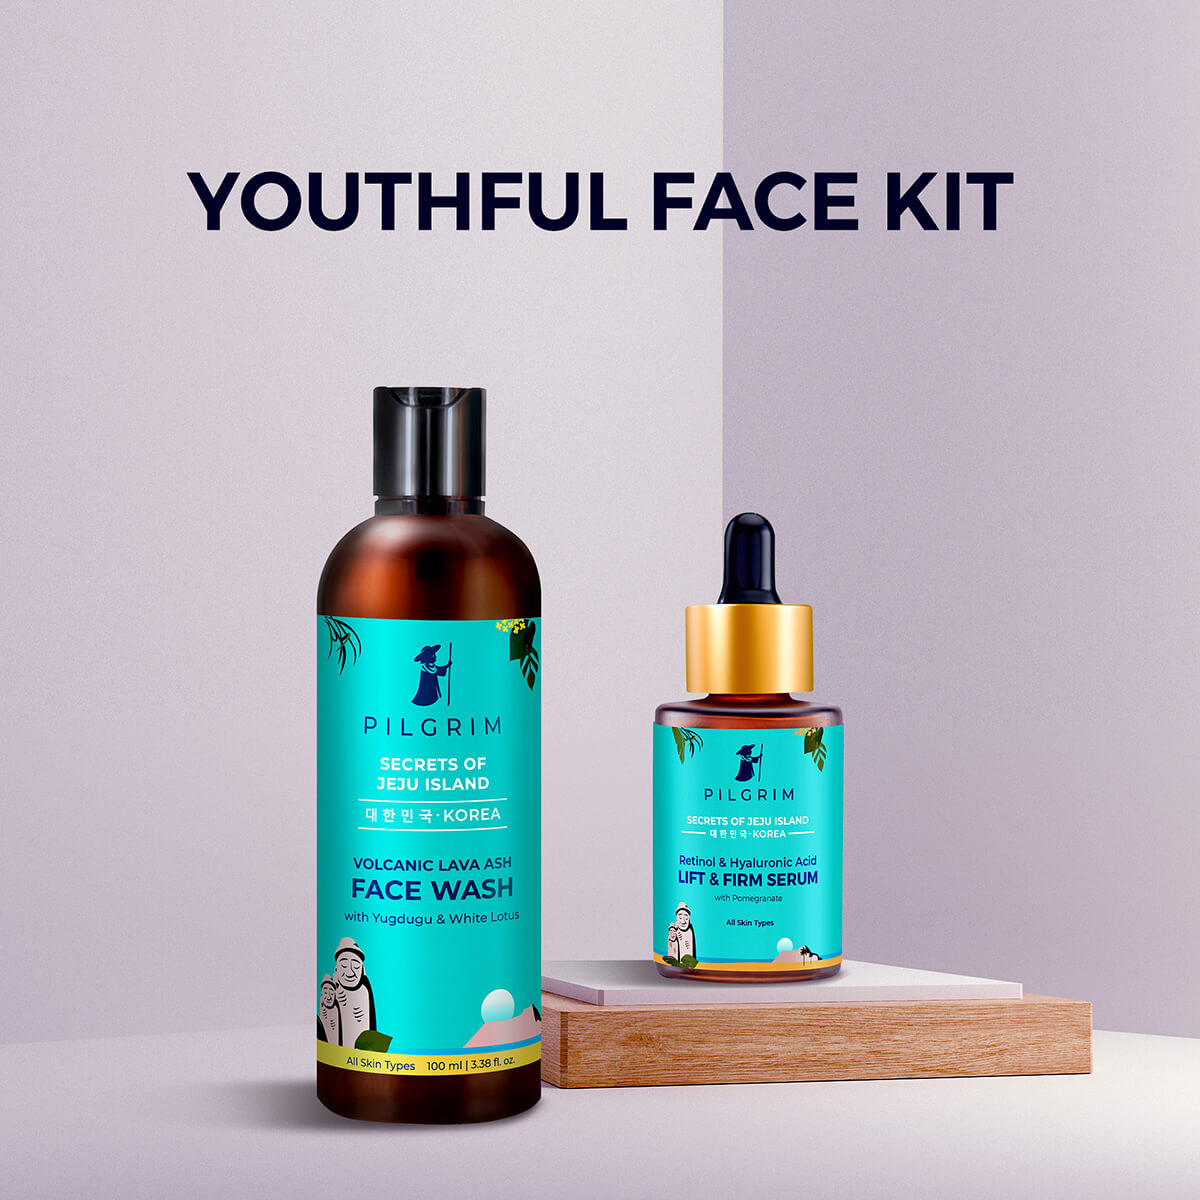 Youthful Face Kit